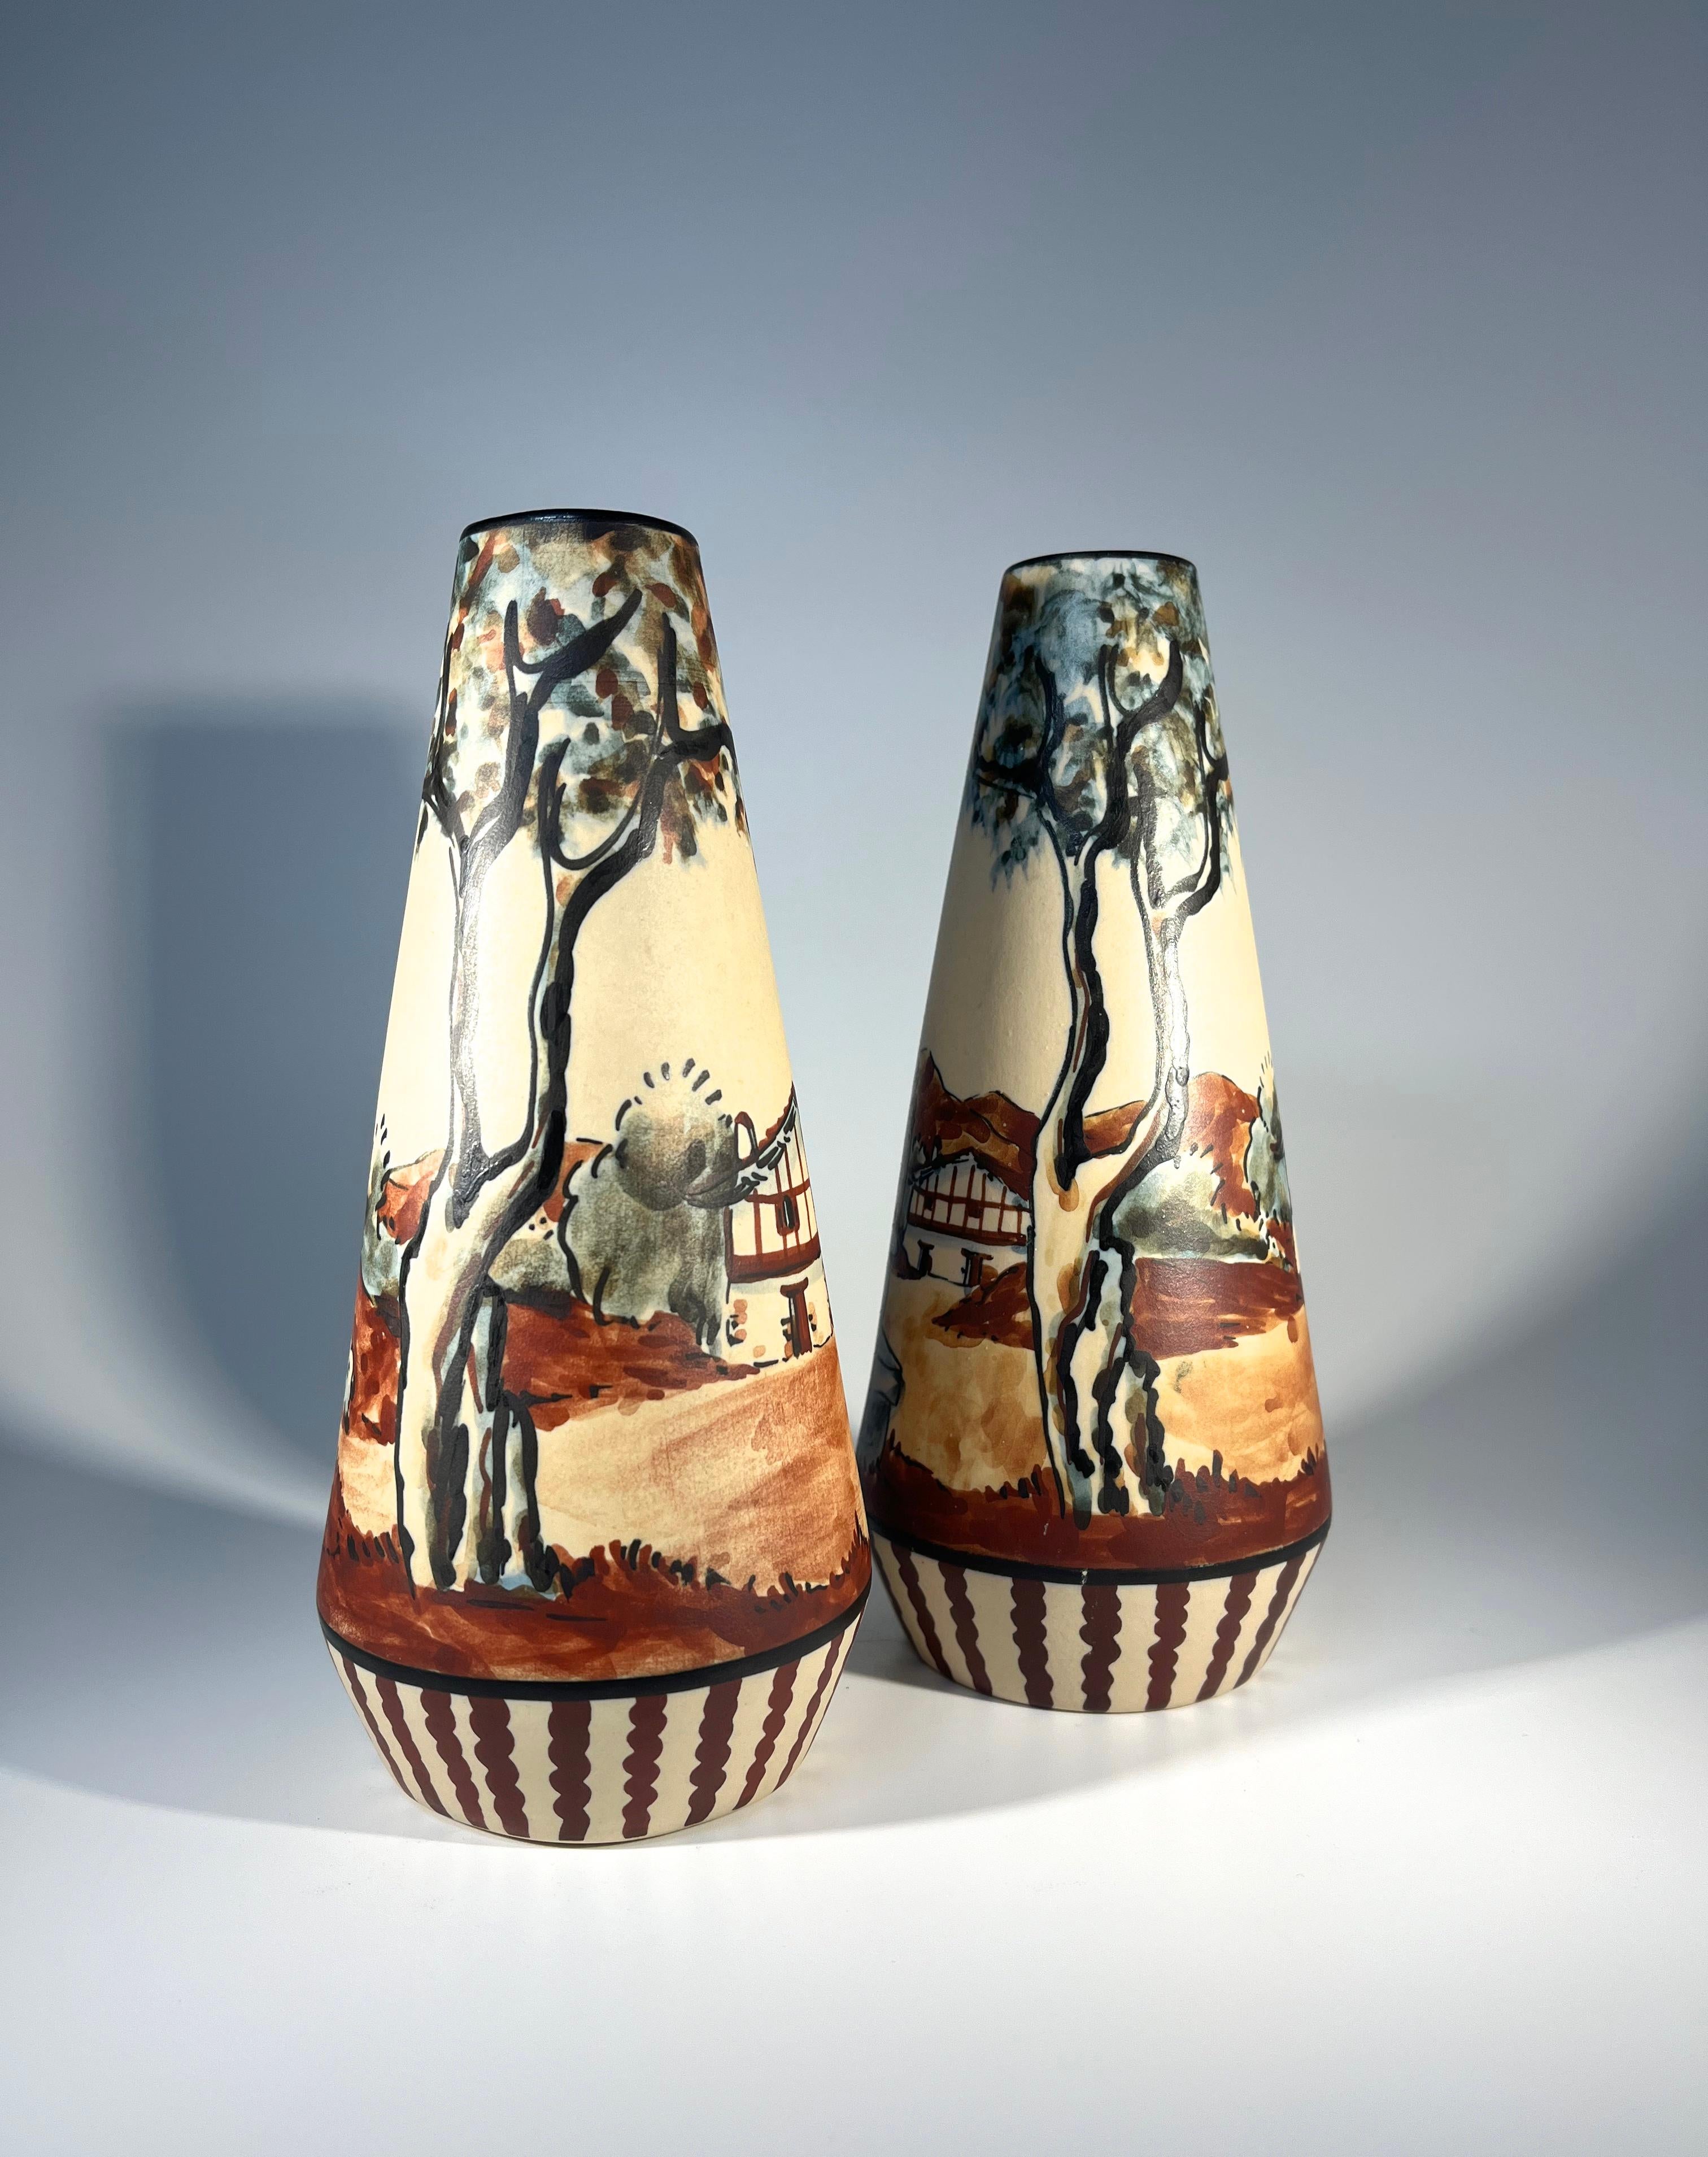 Superbe paire de vases coniques typiques en grès de Ciboure par Anne-Marie Grillard pour Ciboure, France
Décorée à la main avec un berger s'occupant de son troupeau d'un côté et un musicien animé de l'autre.
Bien qu'il s'agisse d'une paire, la